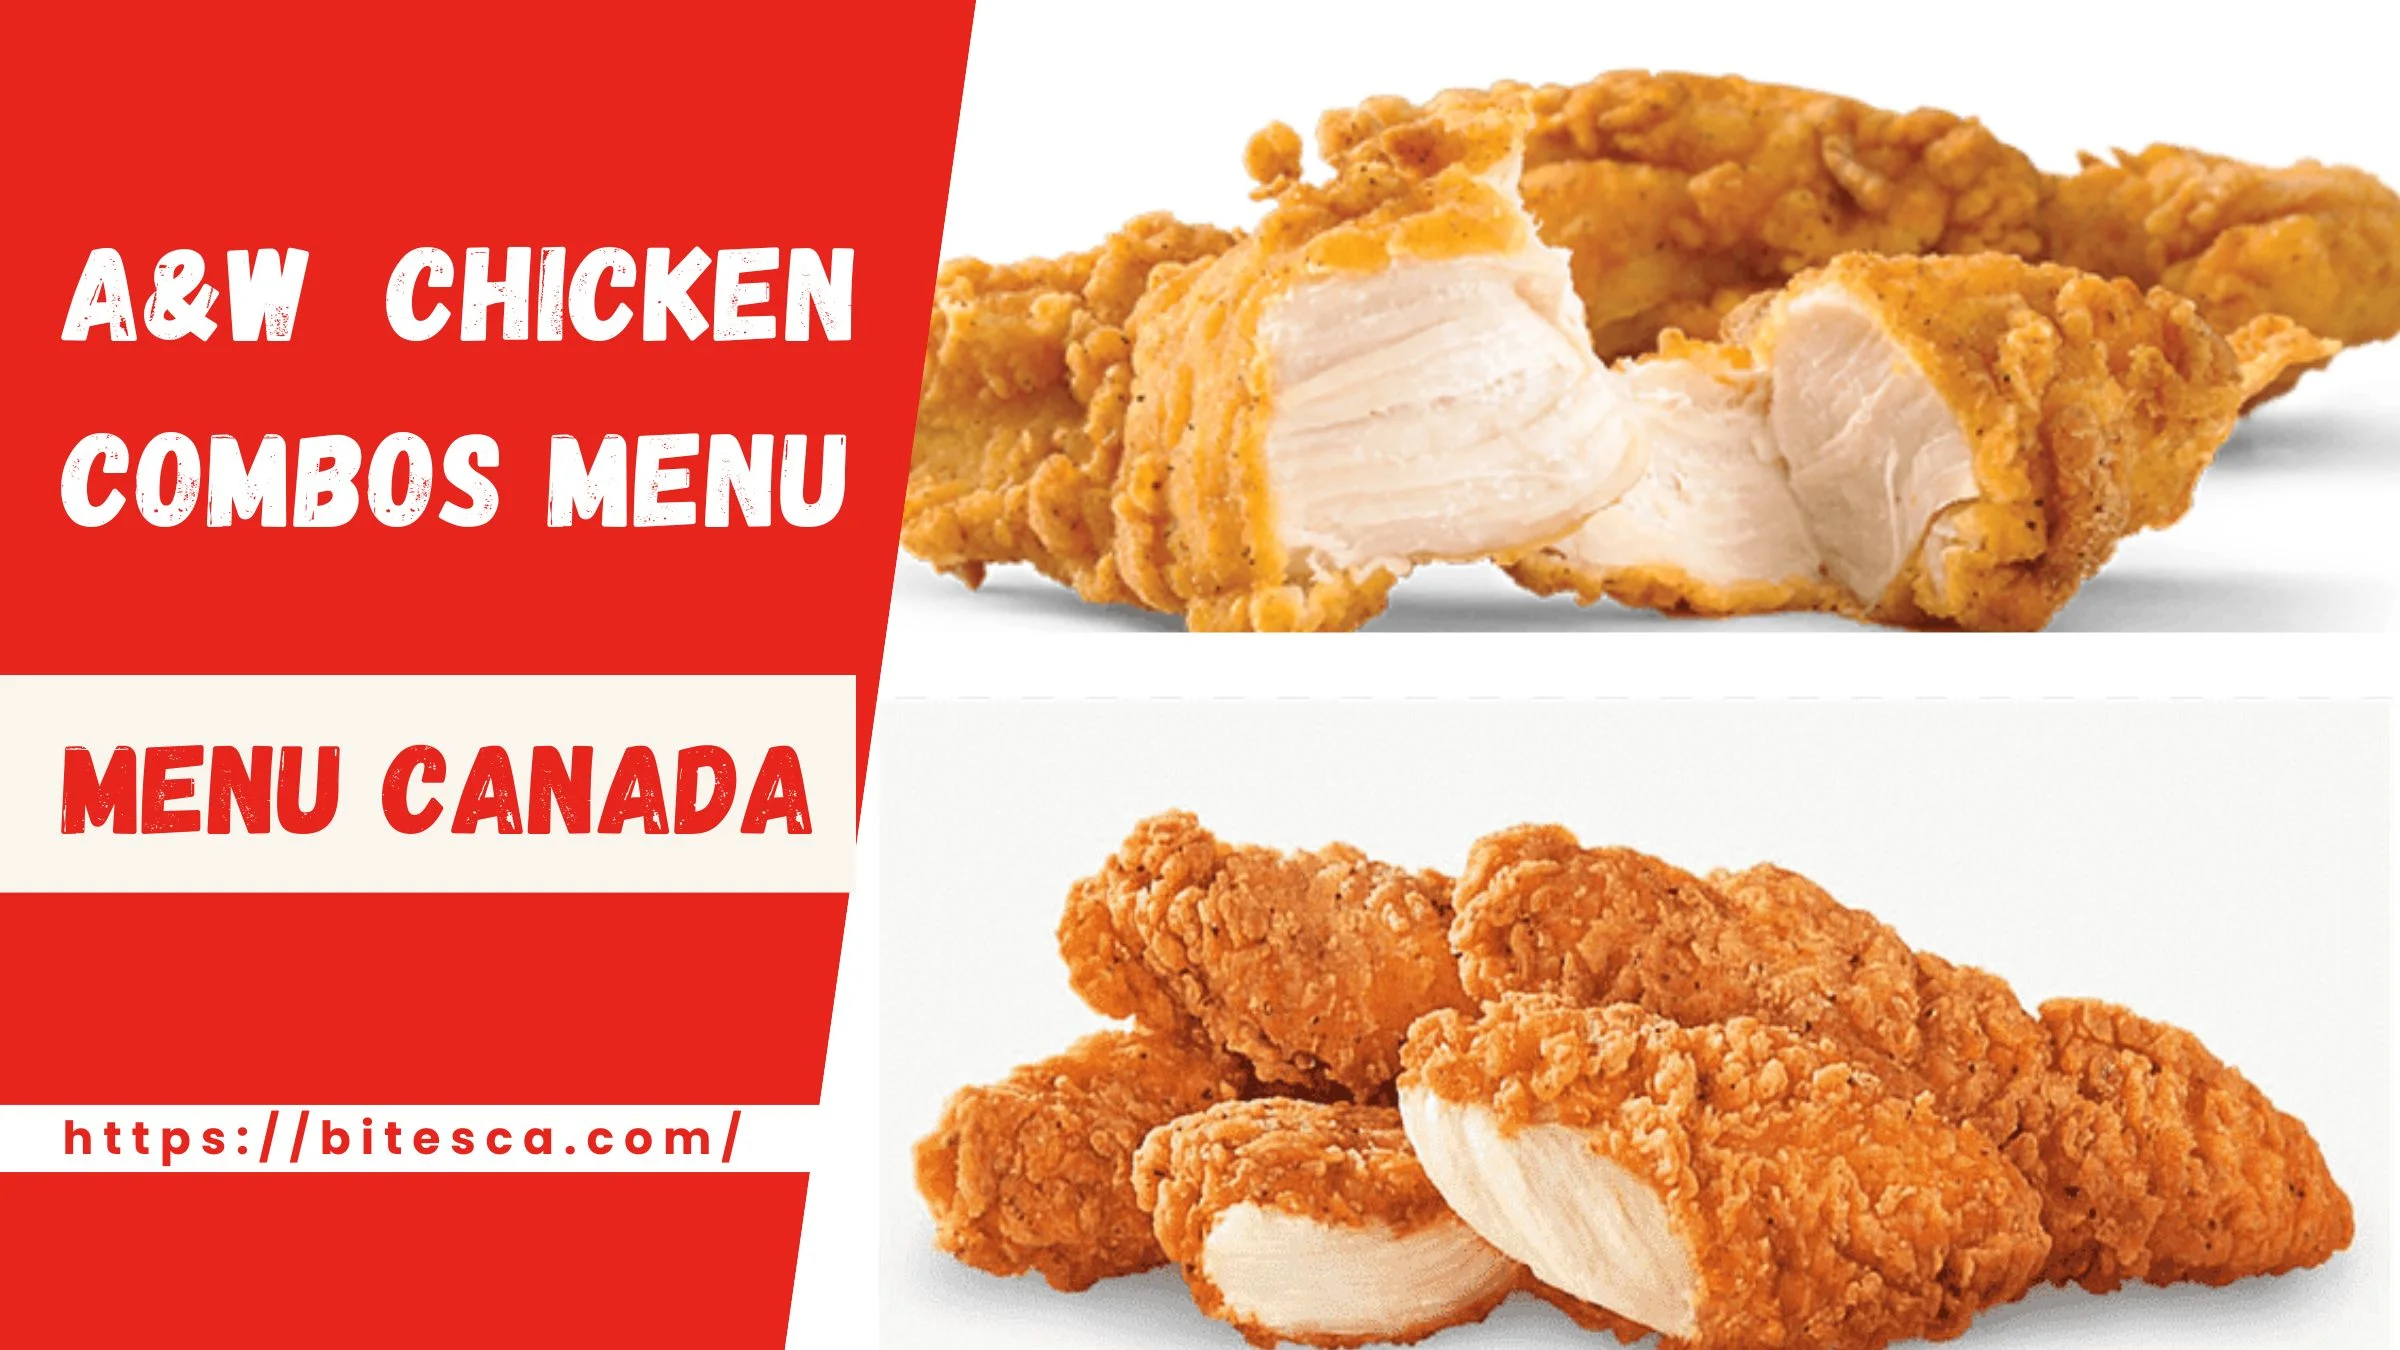 A&W Chicken Combos Menu Price Canada